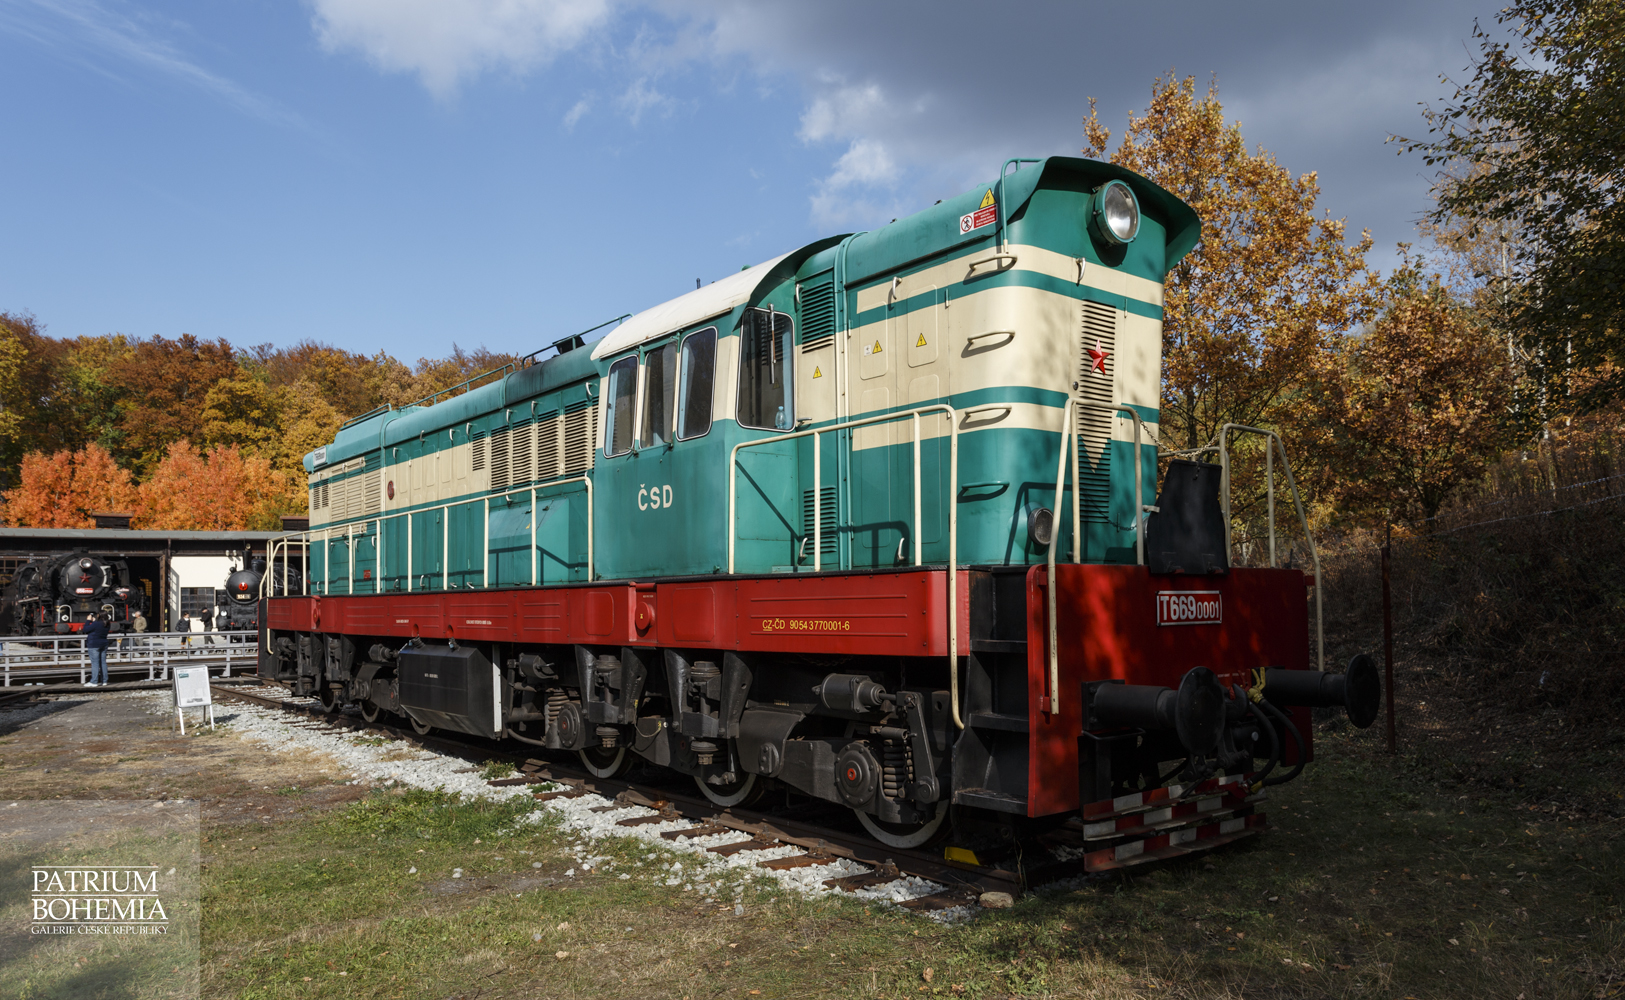 Motorová lokomotiva T669.0001 Čmelák. Železniční muzeum v Lužné u Rakovníka.